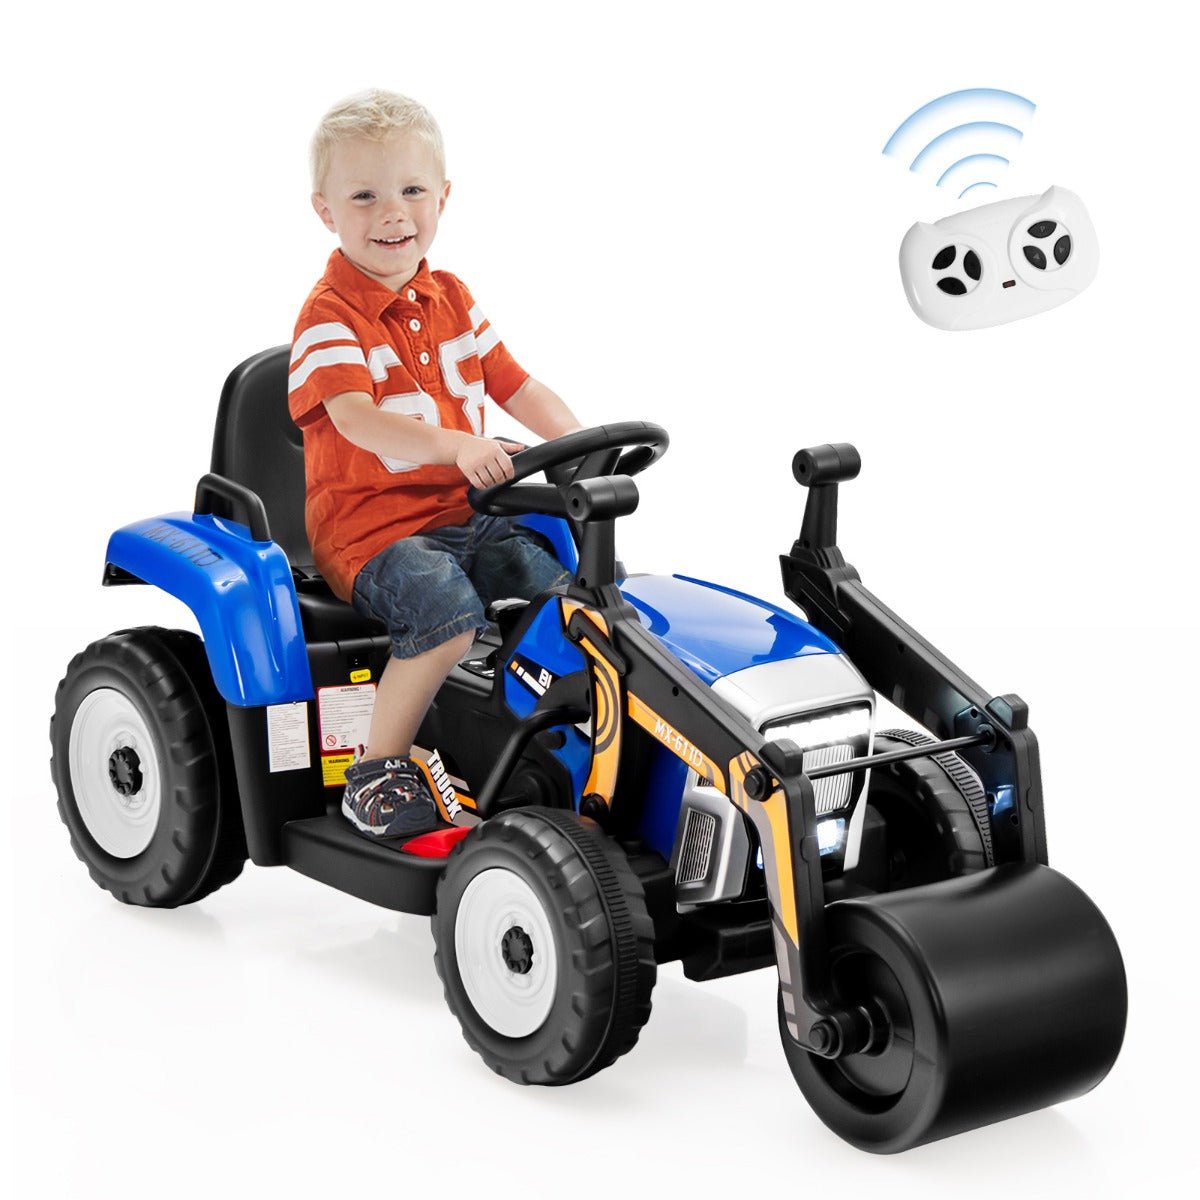 Shop Safe & Entertaining Kids Ride on Road Roller -Remote Control Blue